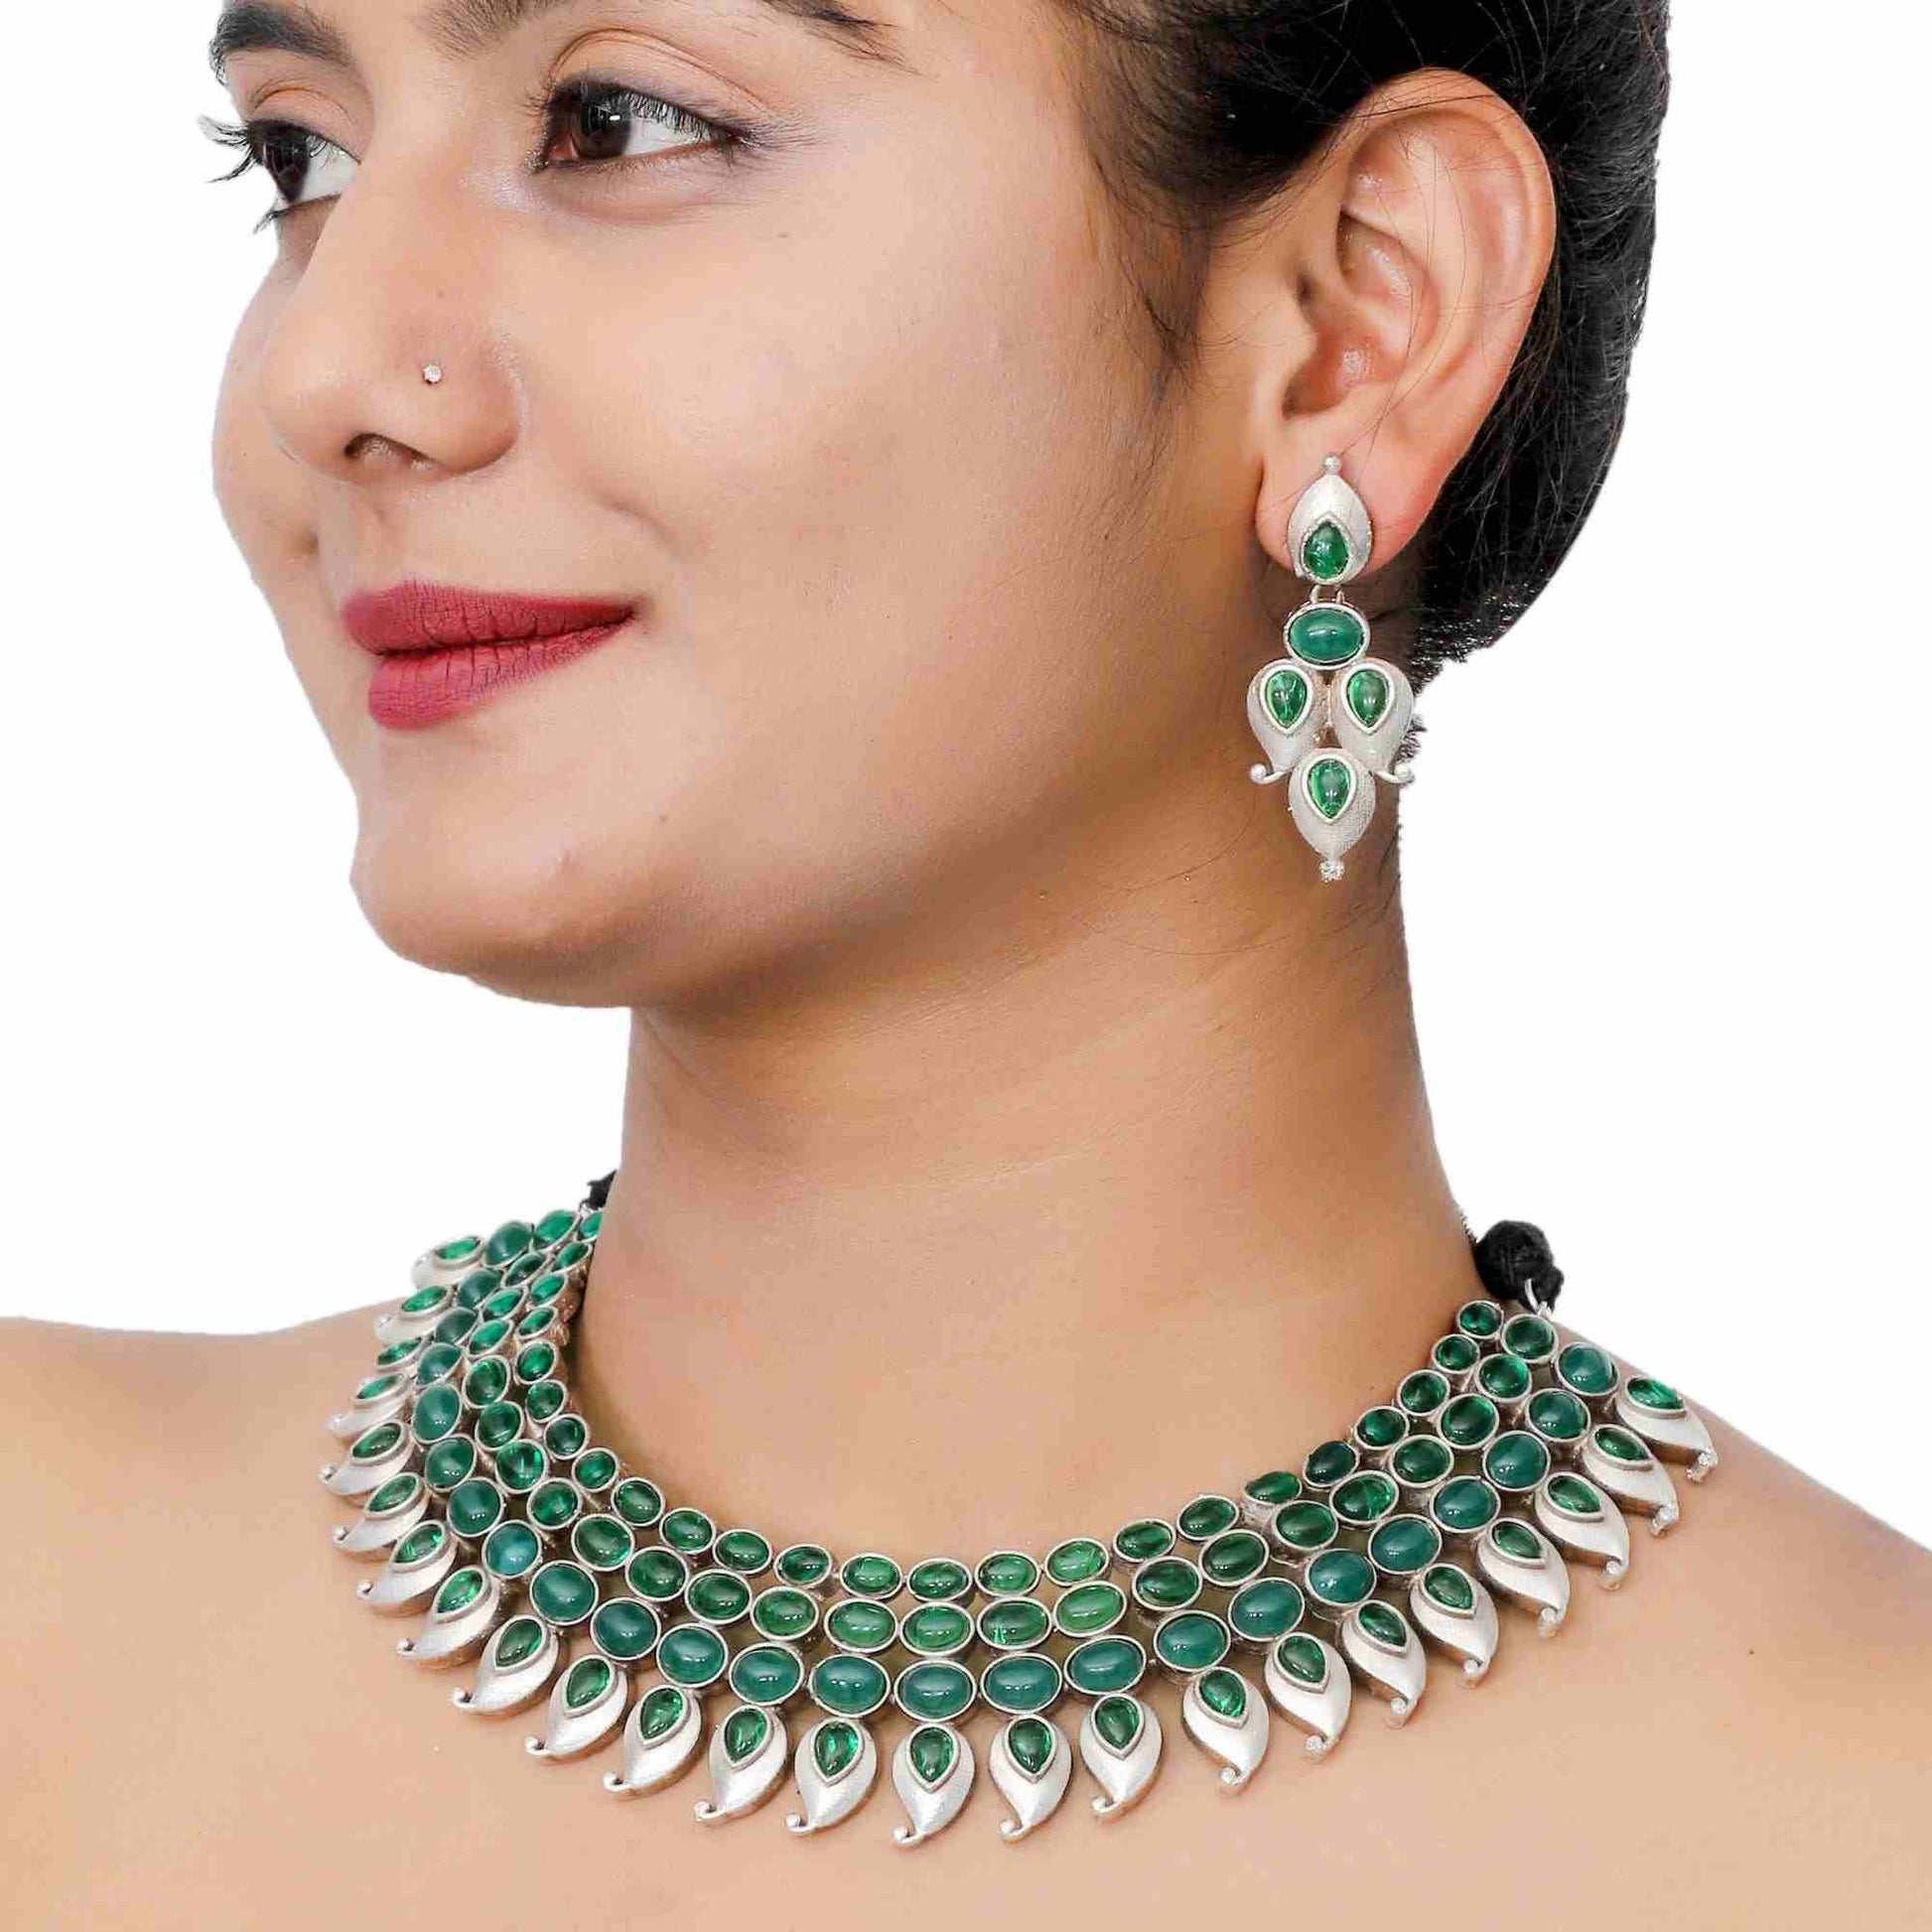 Unique Jewelry Necklace Set